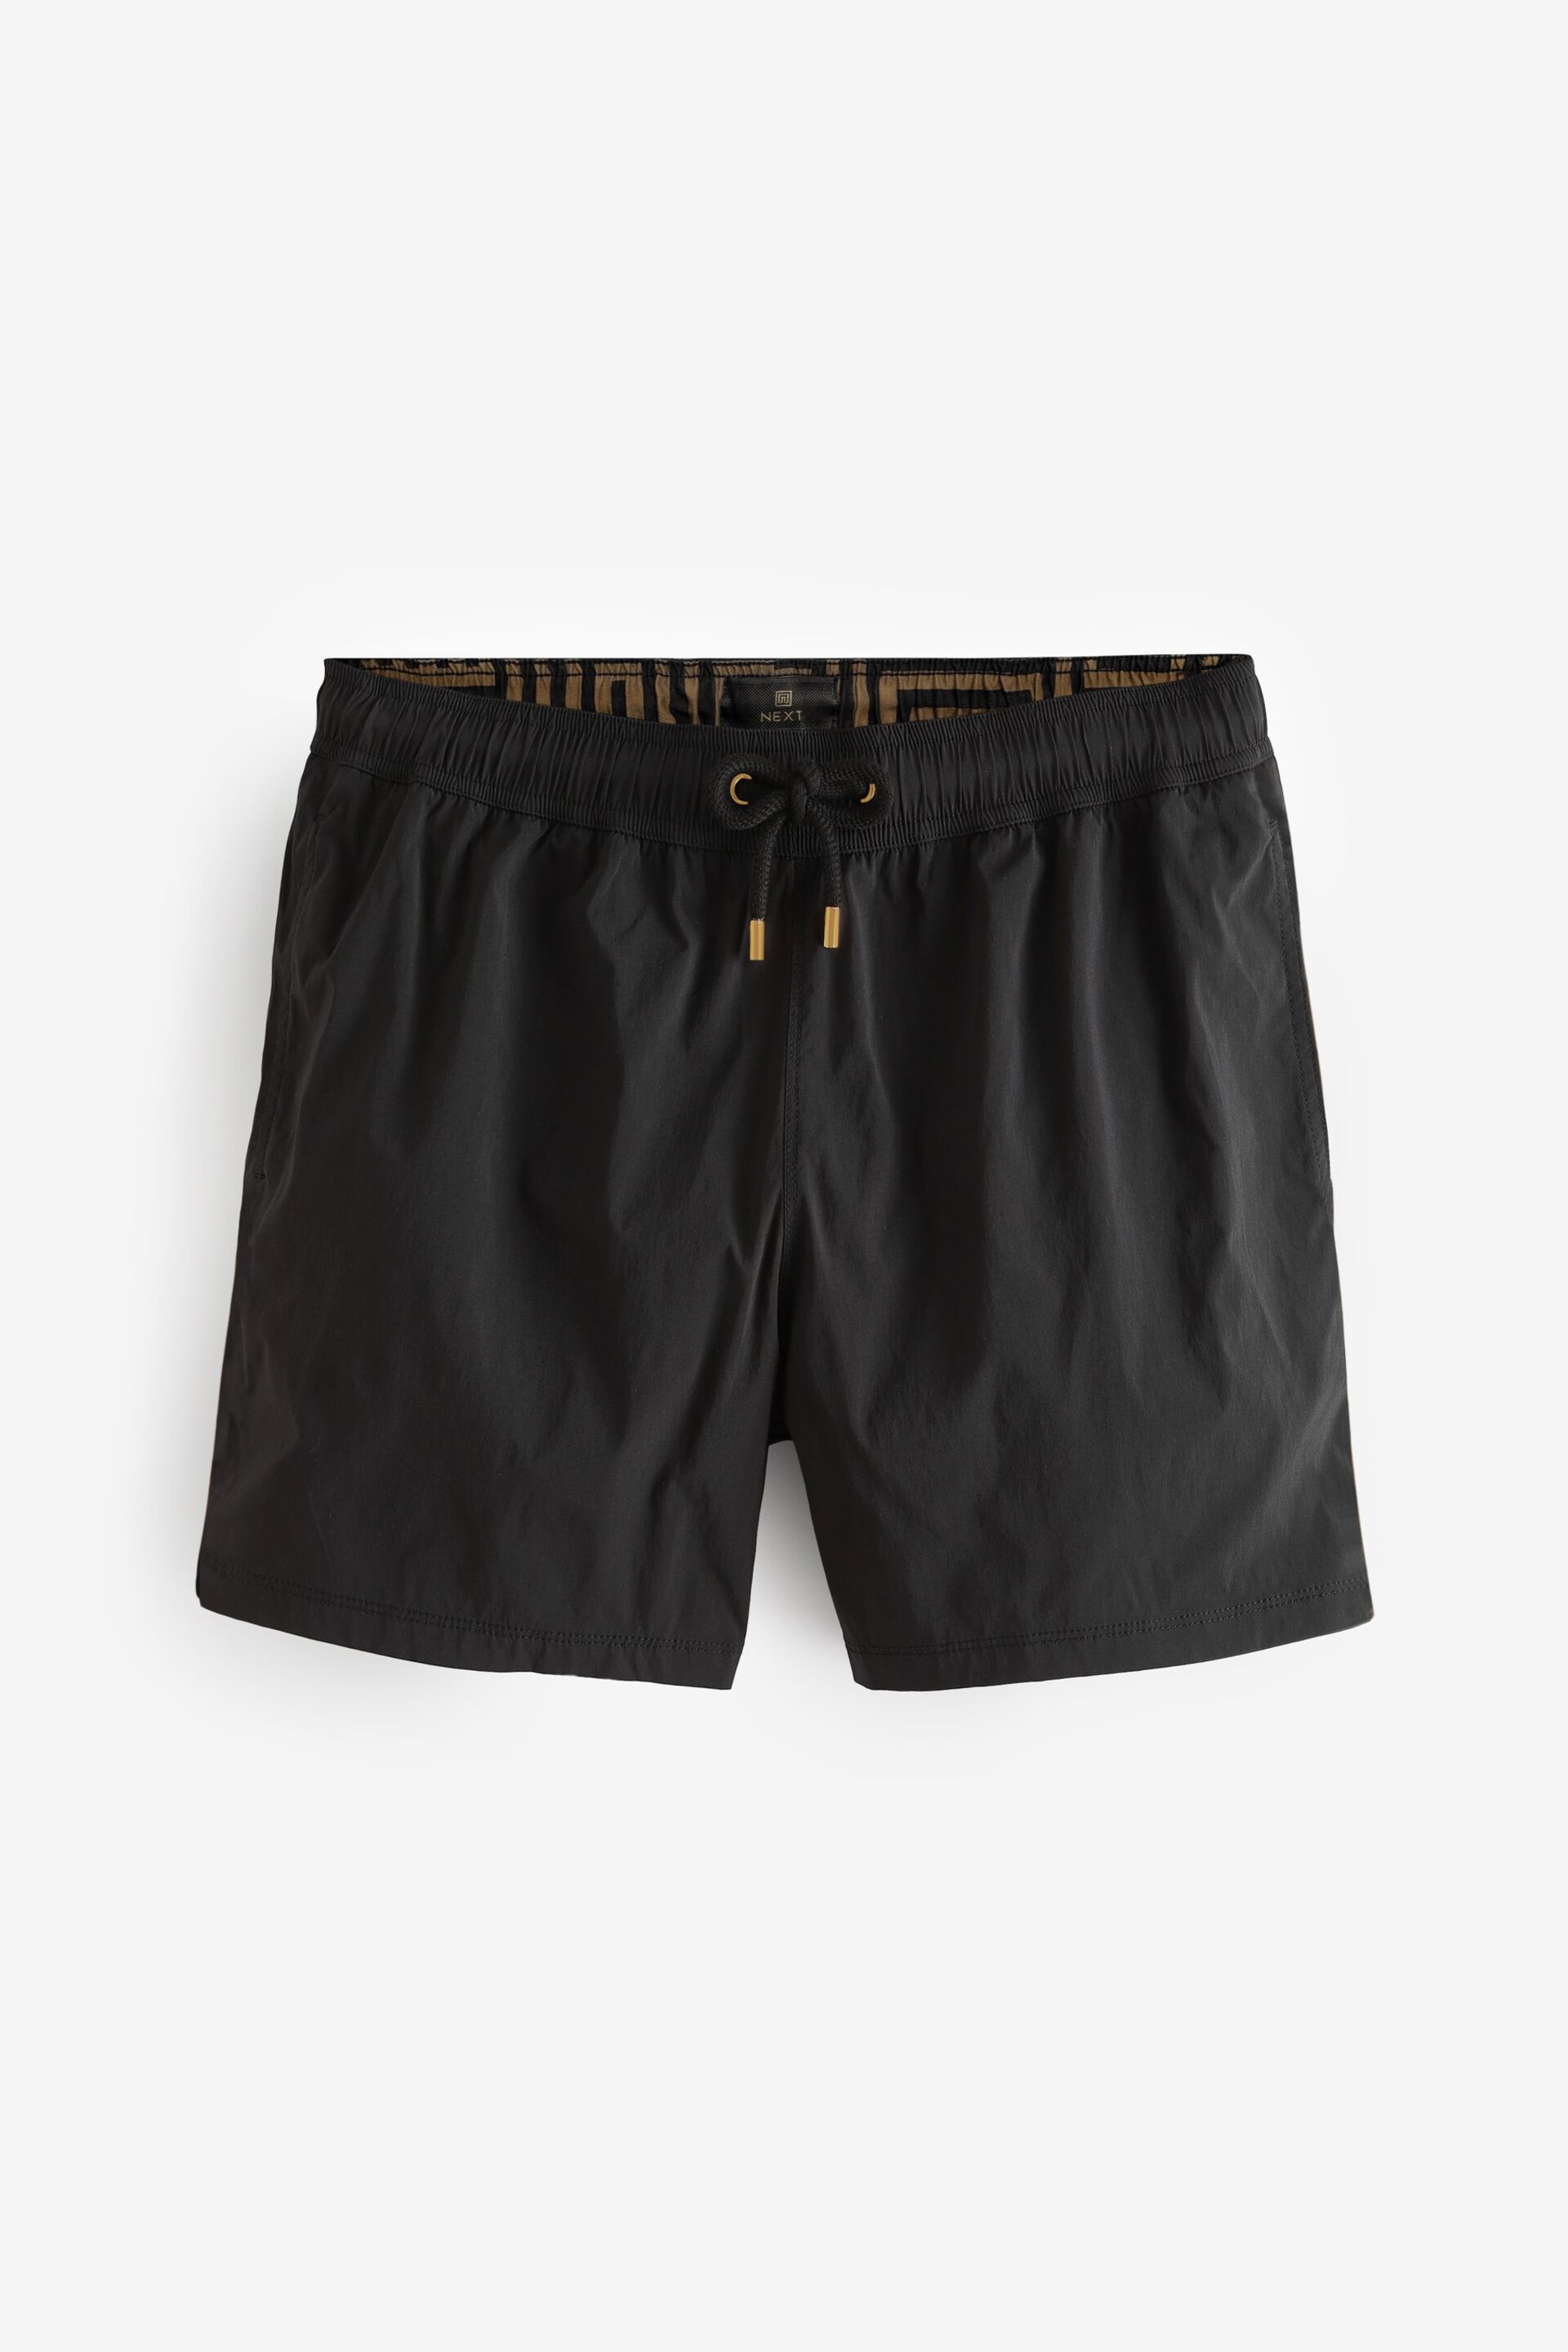 Black Premium Swim Shorts - Image 8 of 12